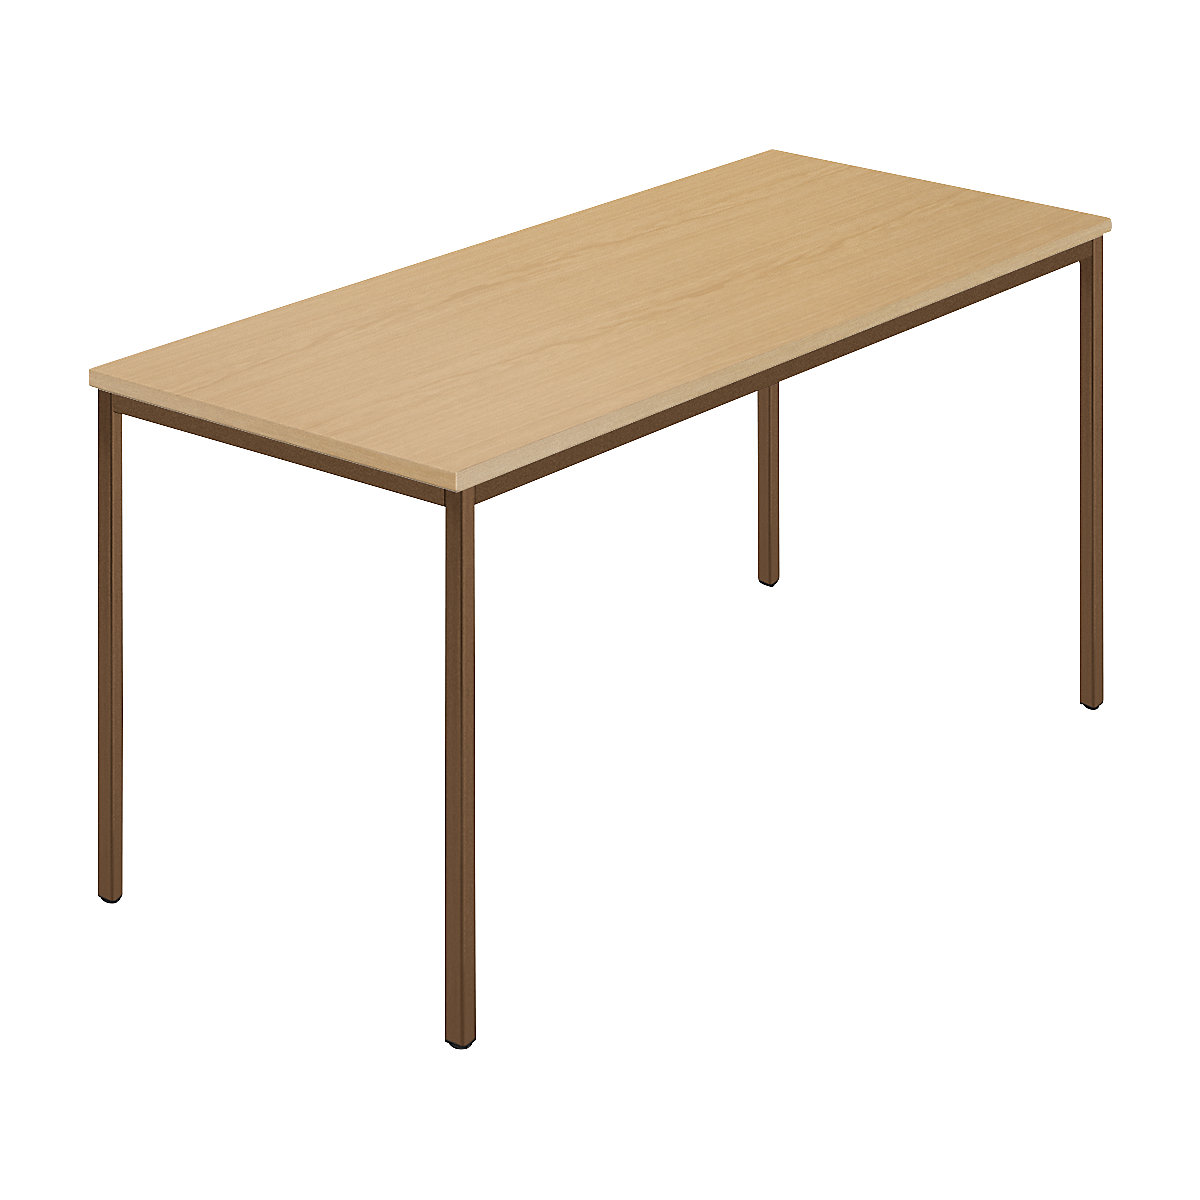 Obdélníkový stůl, čtyřhranné trubky s povlakem, š x h 1400 x 700 mm, buk přírodní / hnědá-7